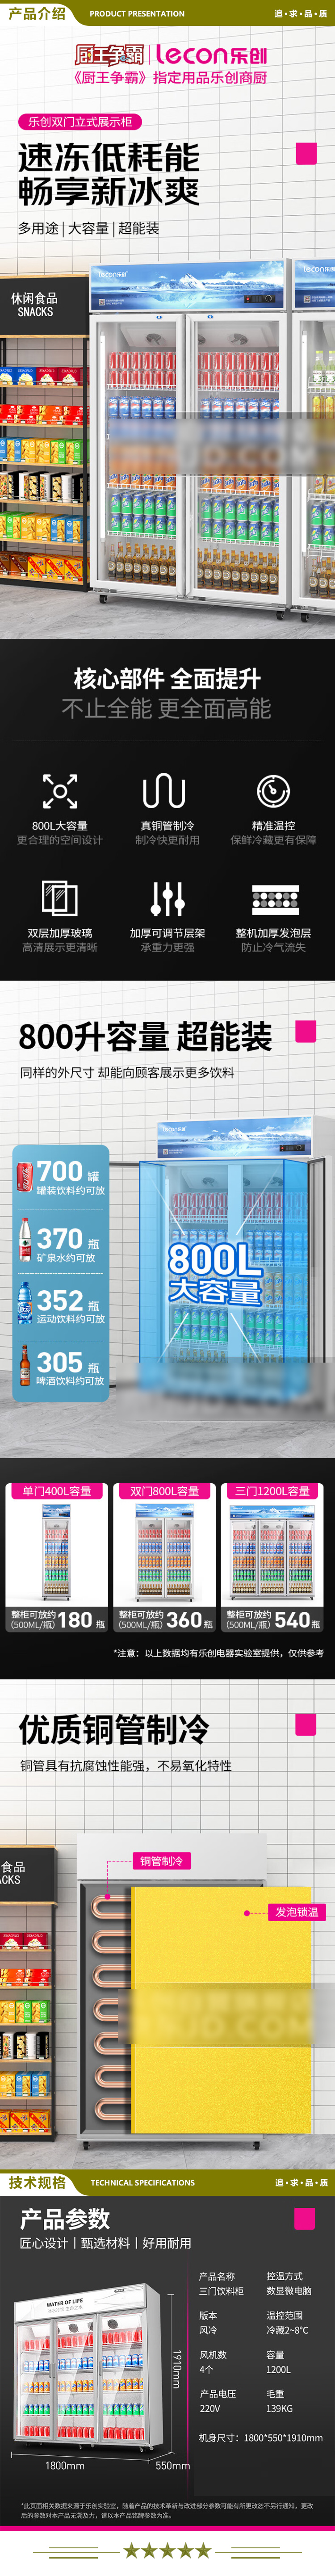 乐创(lecon) LC-ZSG03 1200F B2 冷藏柜商用展示柜 超市便利店饮料柜水果保鲜柜风冷   2.jpg